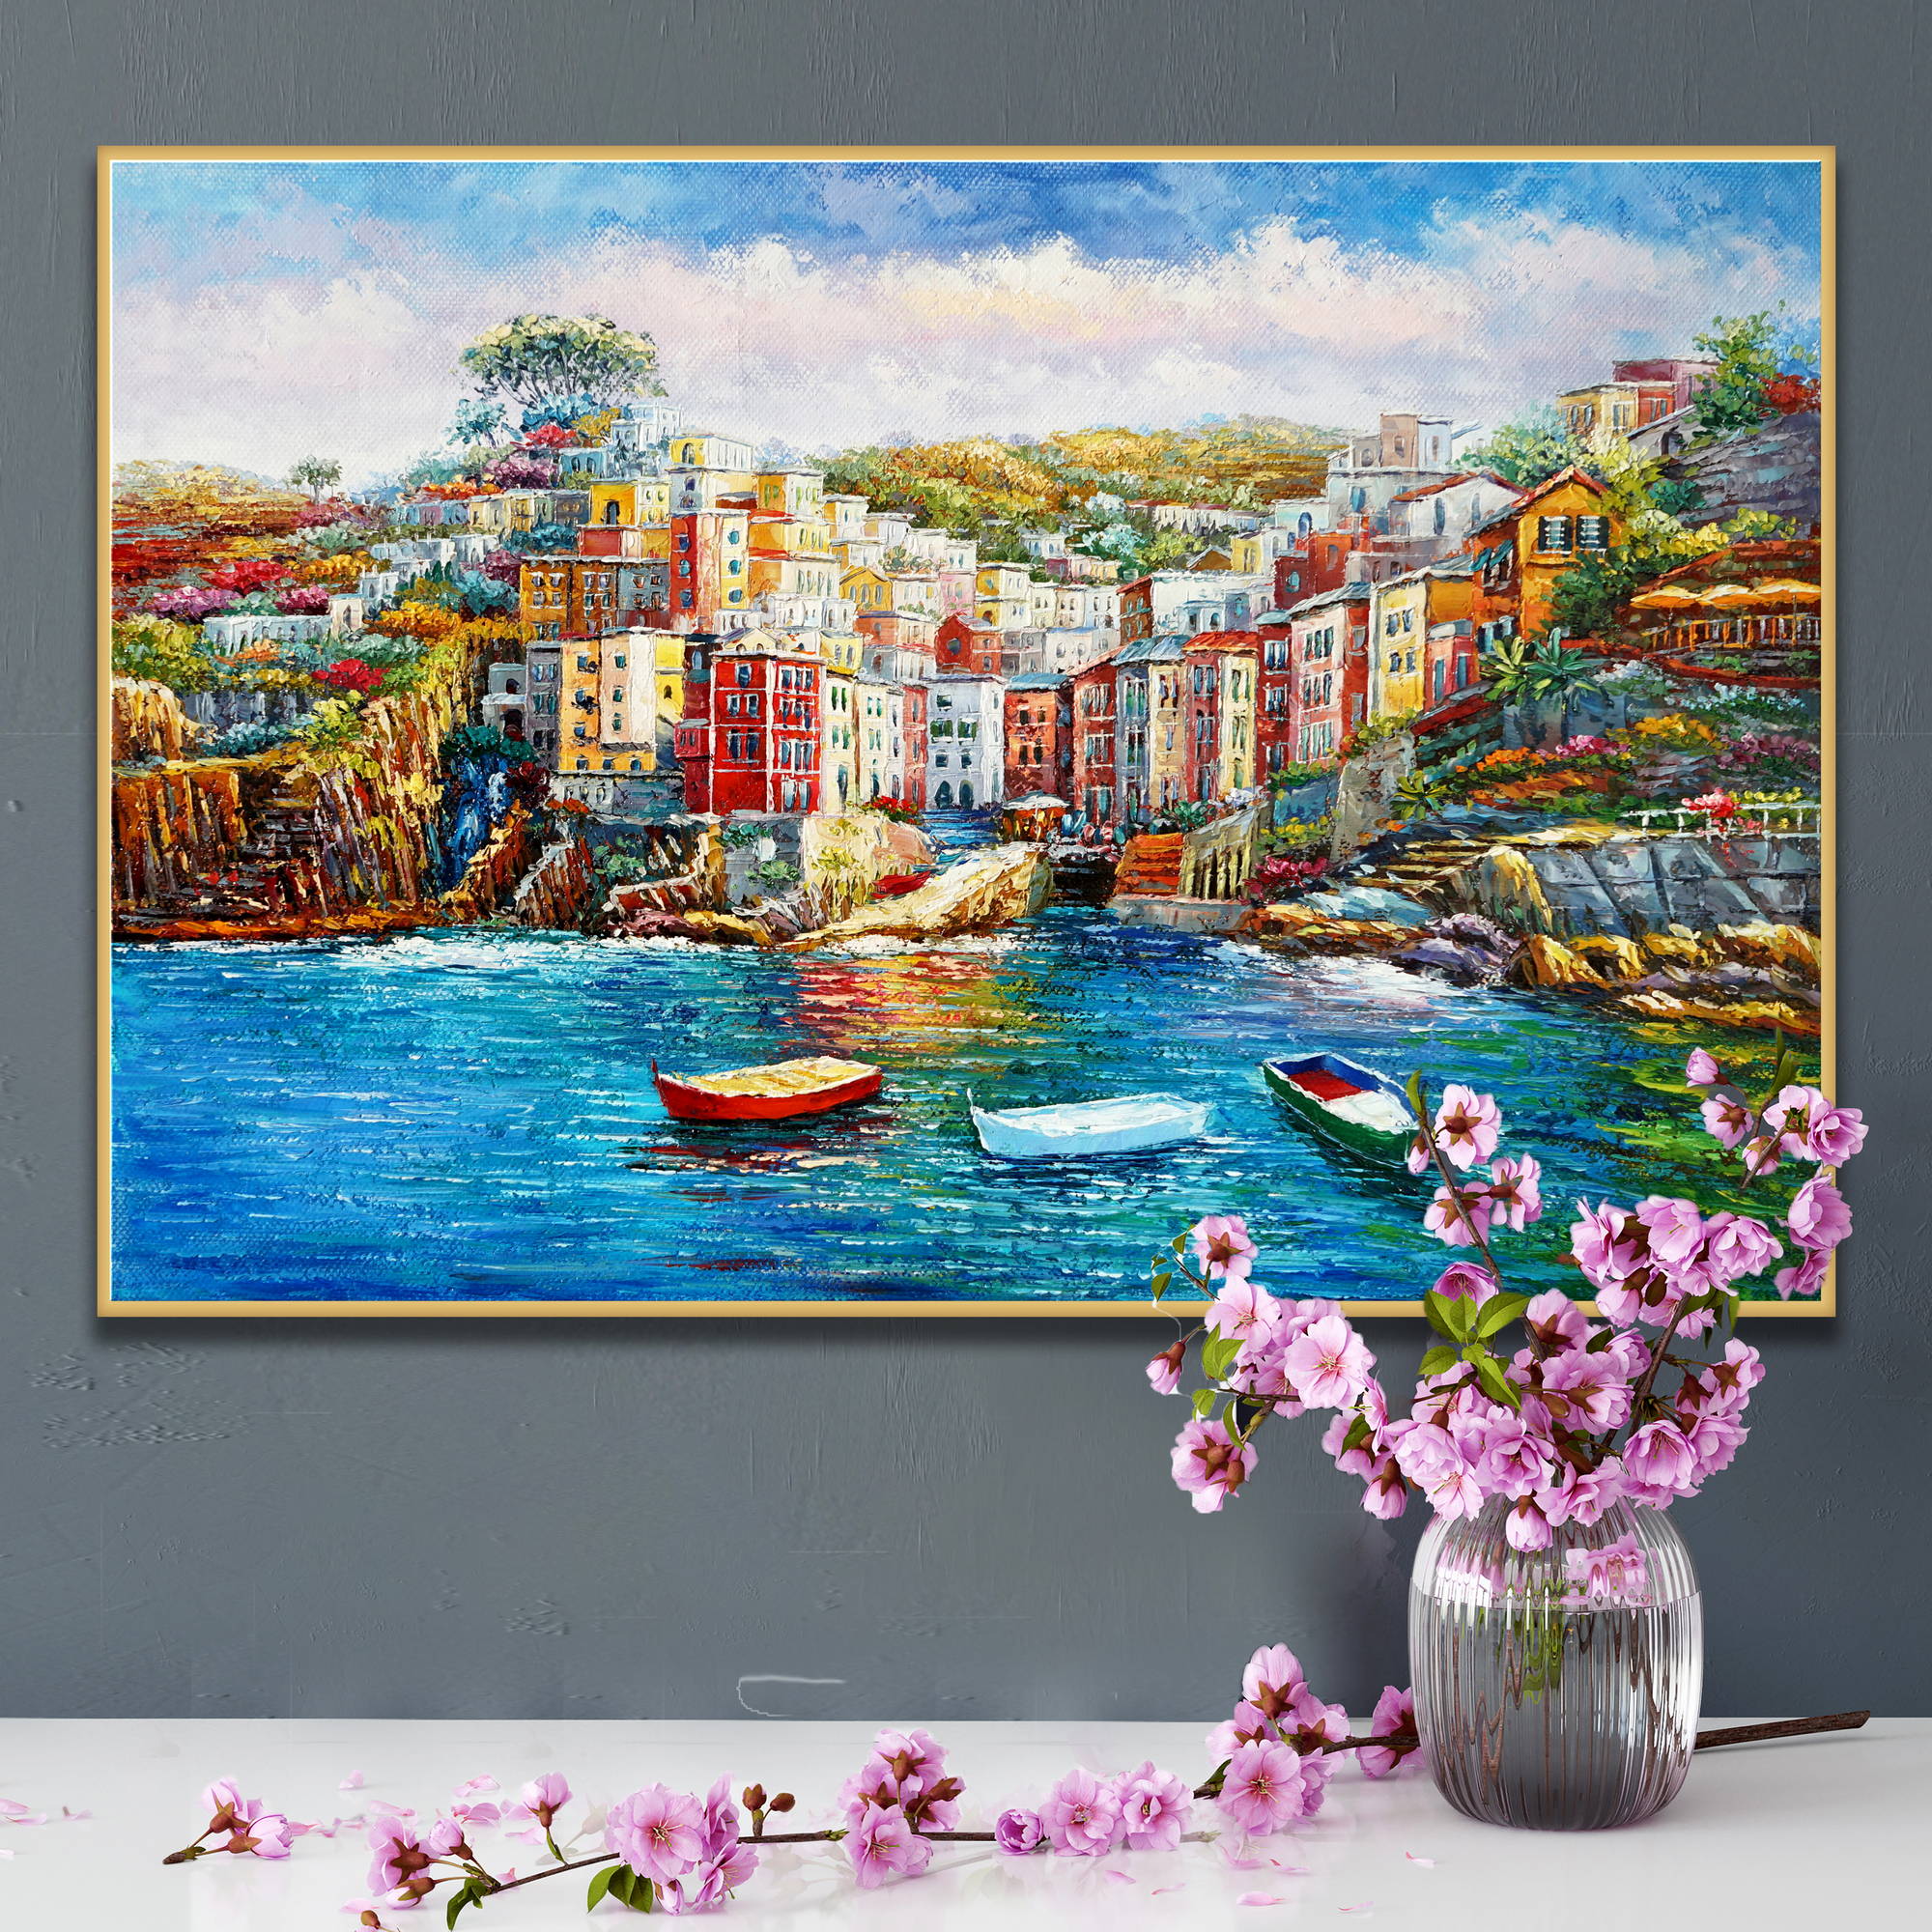 Dipinto del pittoresco e colorato borgo di Riomaggiore nelle Cinque Terre